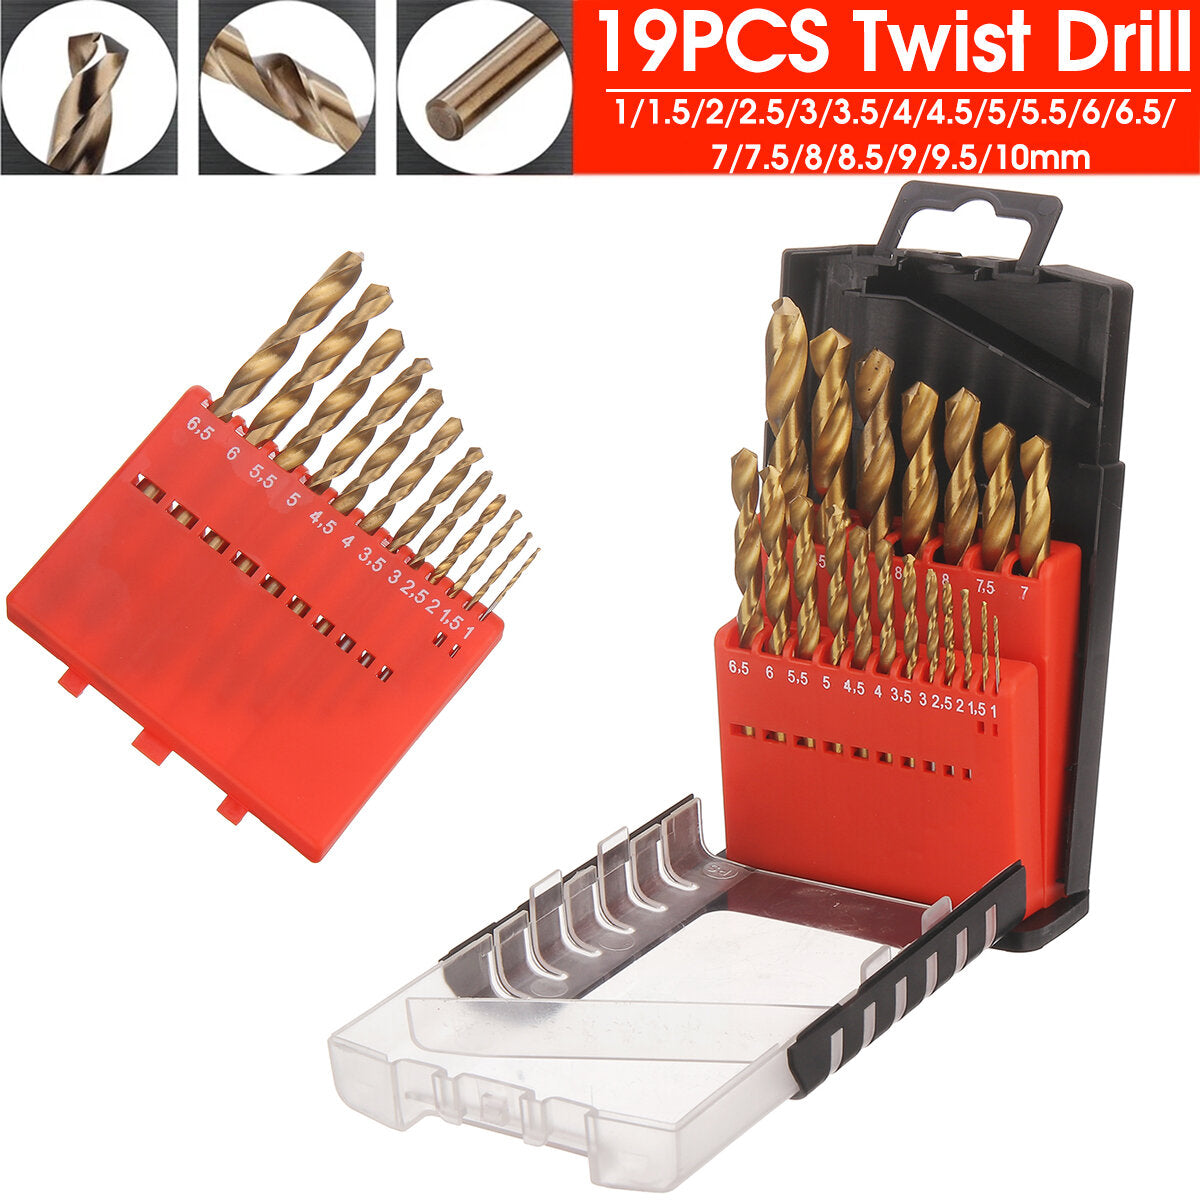 19 stuks spiraalboor set hss titanium coated boor metaal houtbewerking boor 1.0 ~ 10mm boren power tools